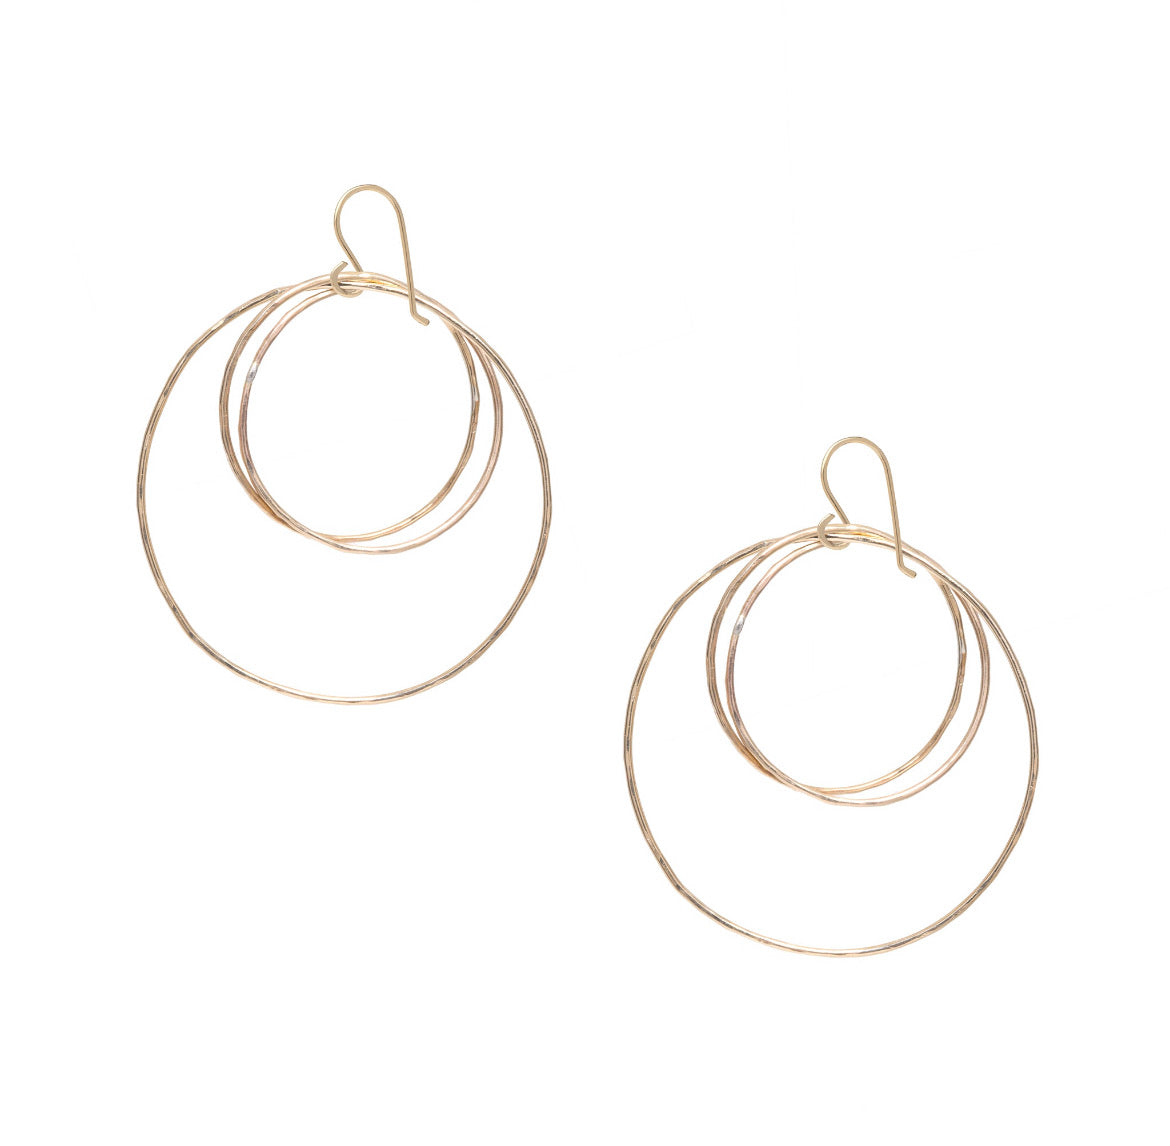 Triple Hoop Bundle earrings